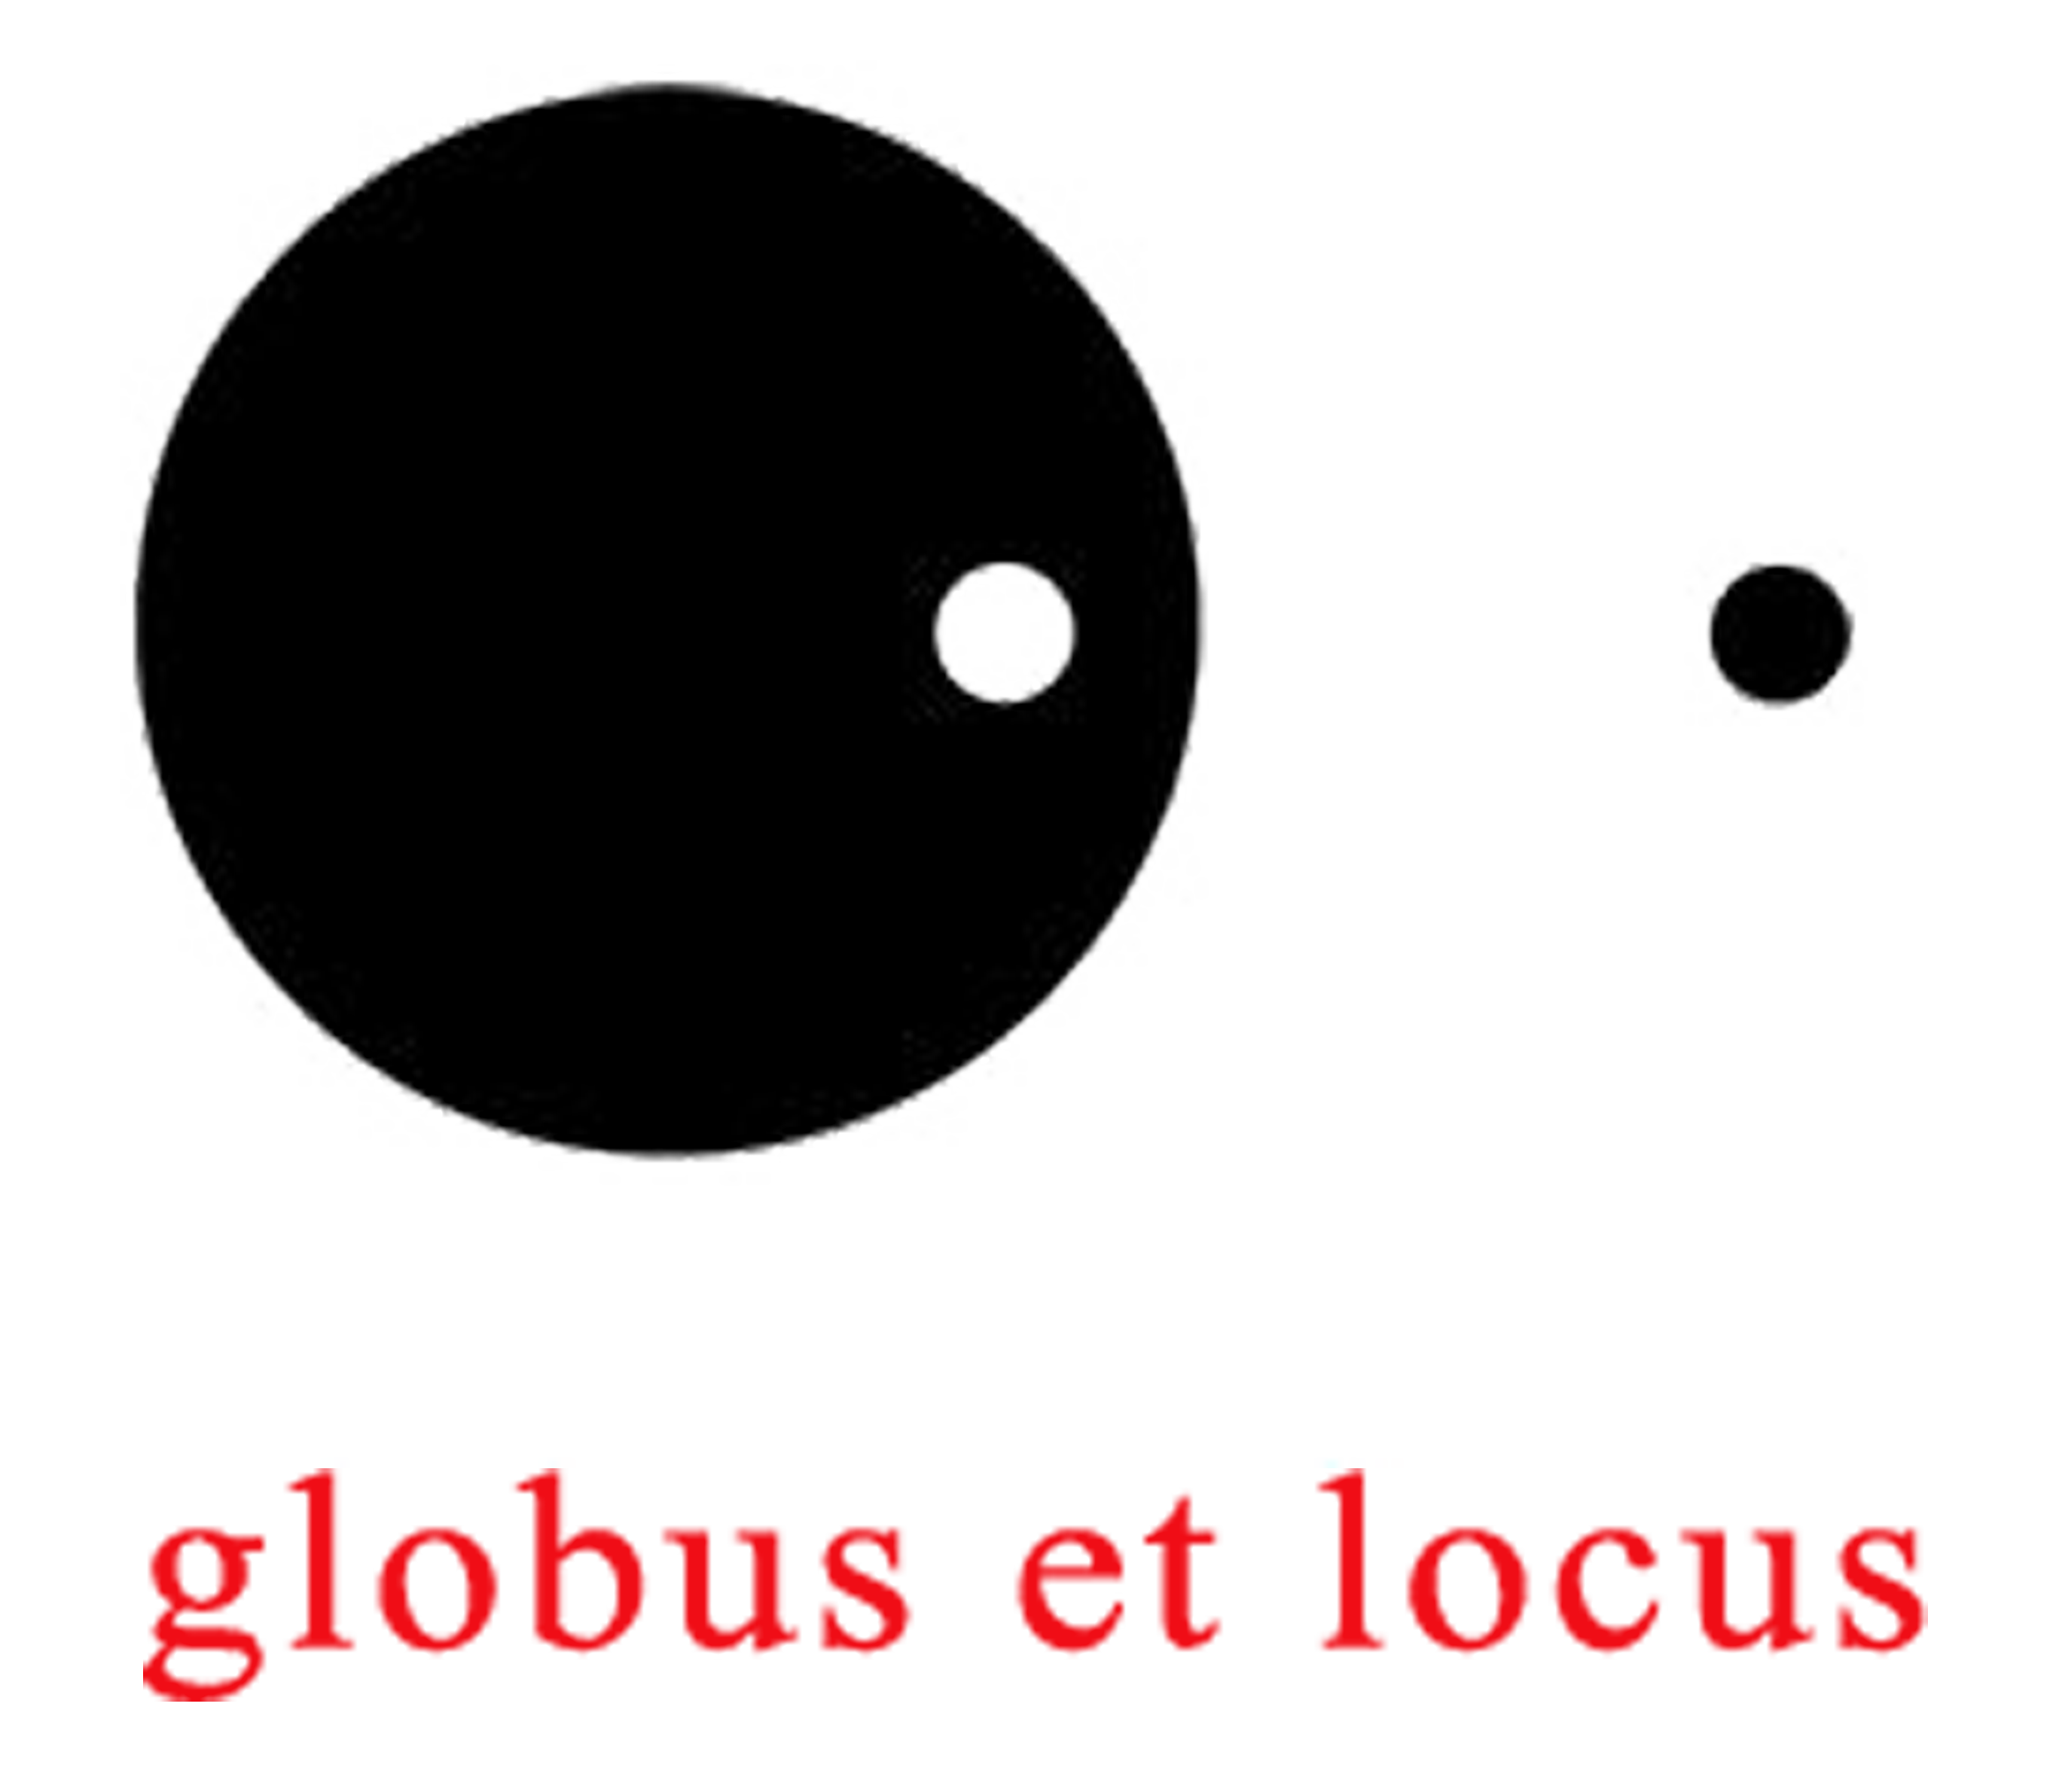 globus et locus